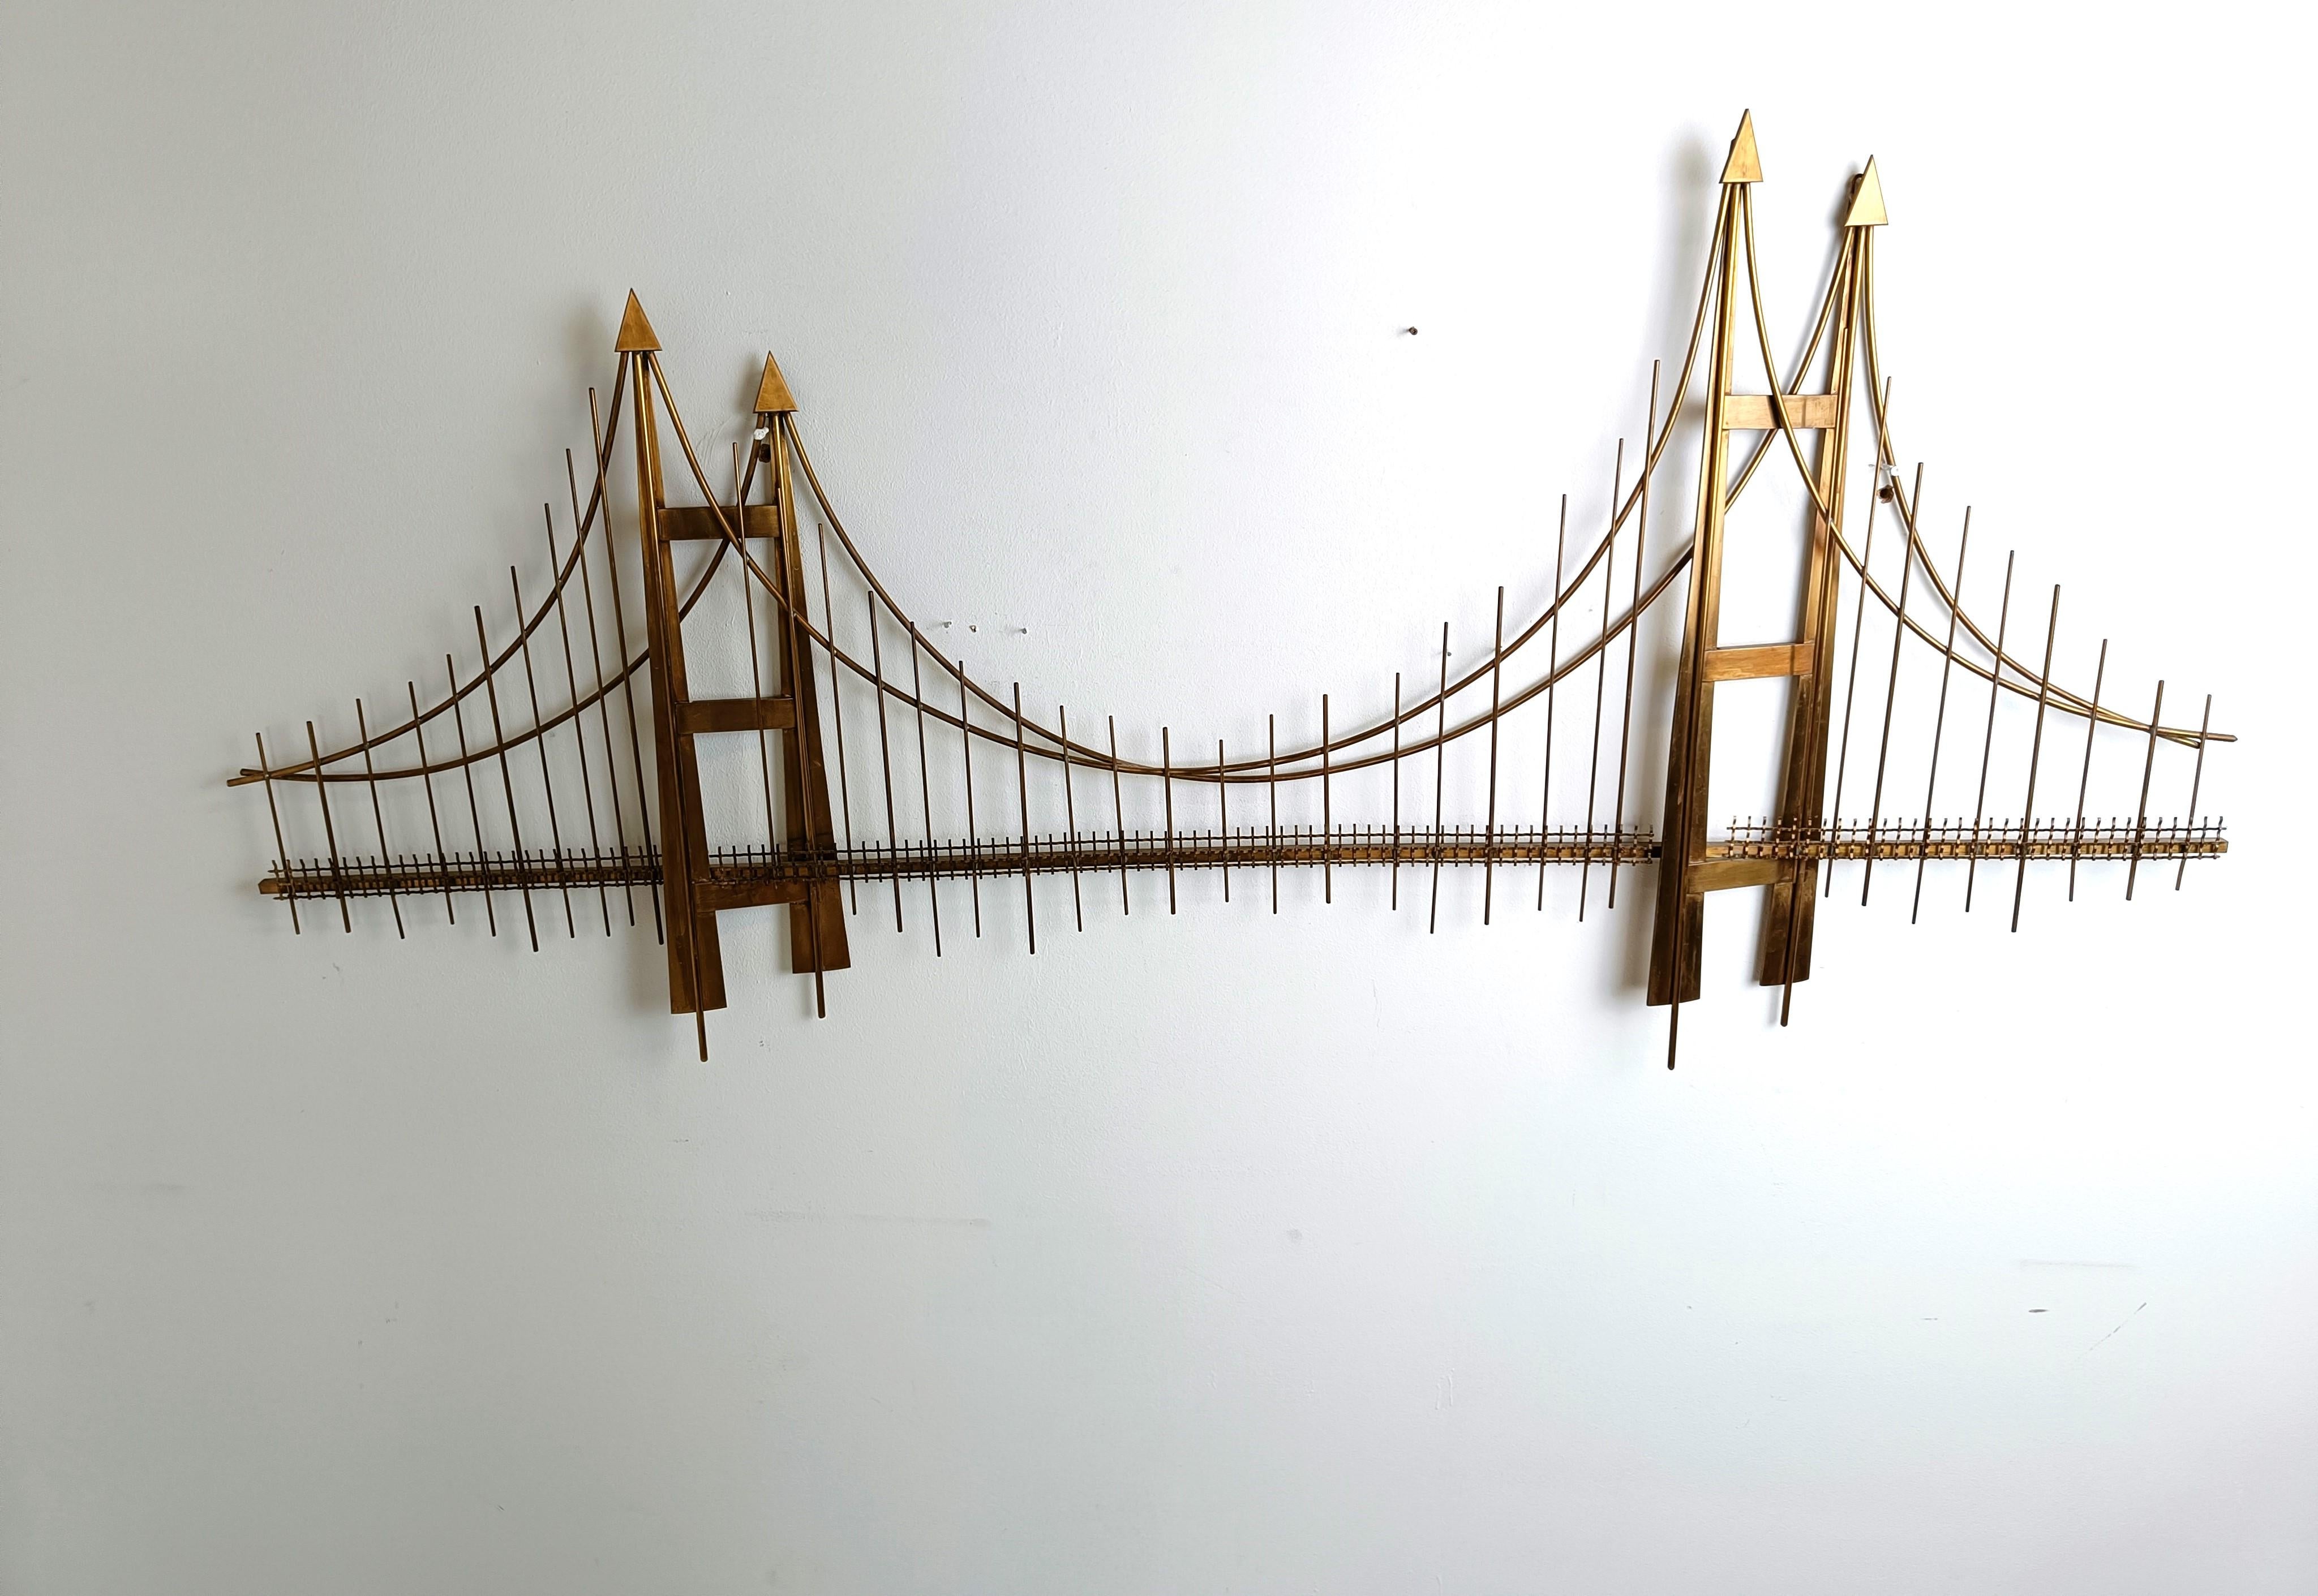 Beeindruckende Wandskulptur aus Kupfer, die die Golden Gate Bridge darstellt, ganz in der Art von Curtis Jeré.

Die Skulptur soll einen 3-D-Effekt der Brücke erzeugen.

guter Zustand

1970er Jahre - Belgien

Abmessungen:
Breite: 160cm
Höhe: